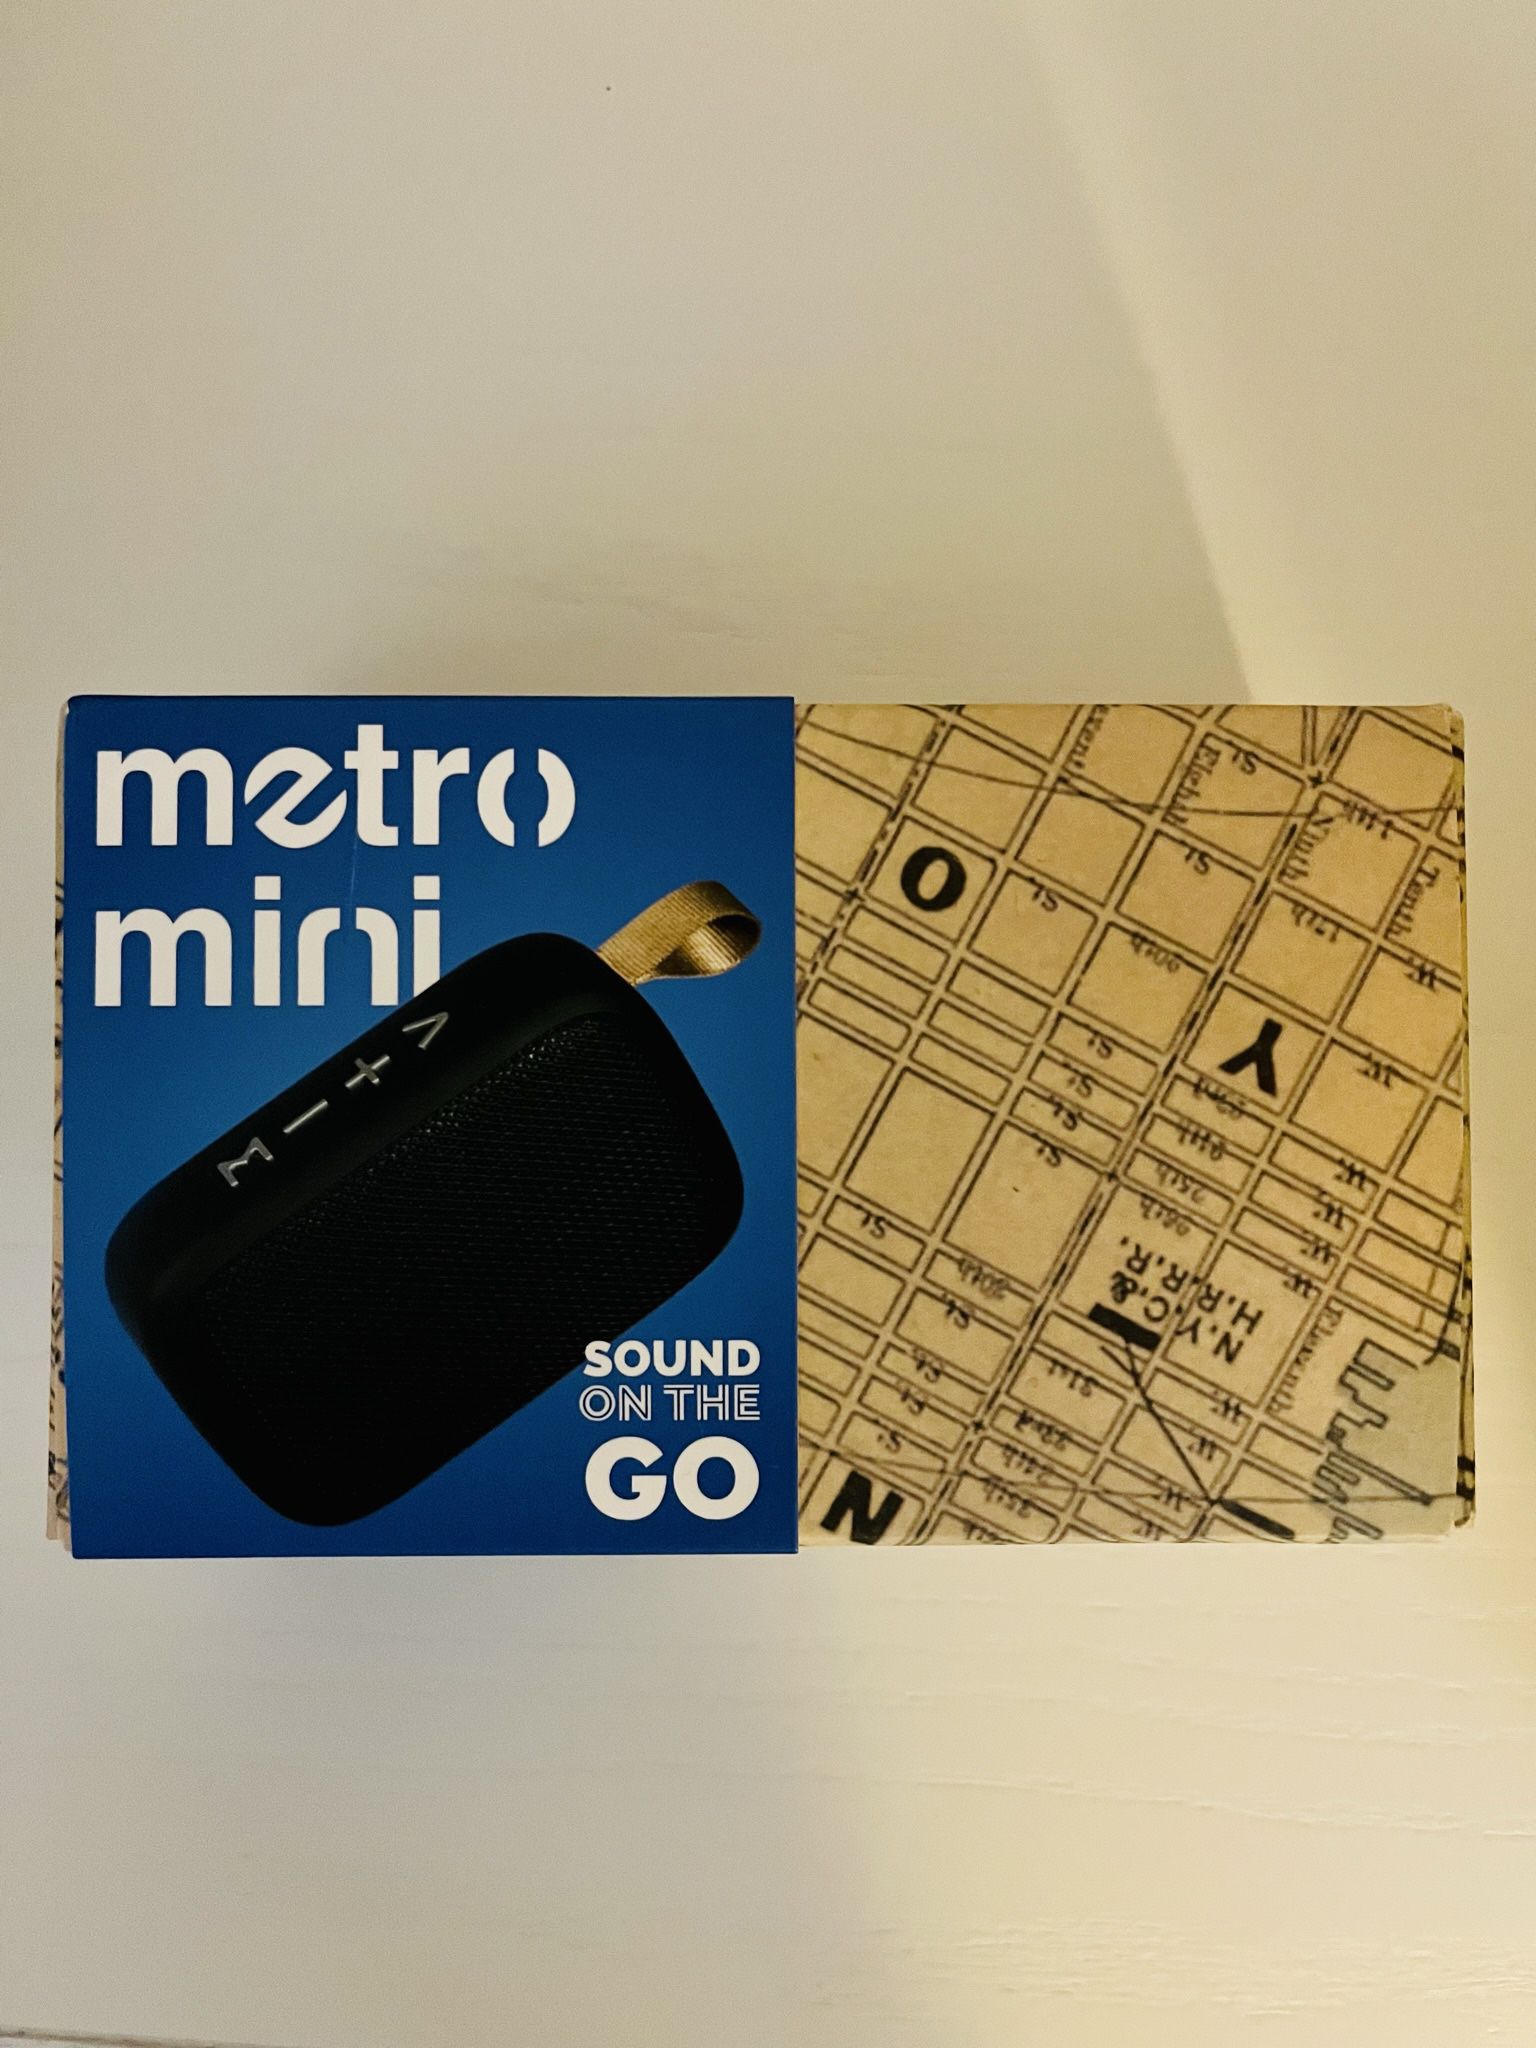 Metro Mini Bluetooth Speaker 